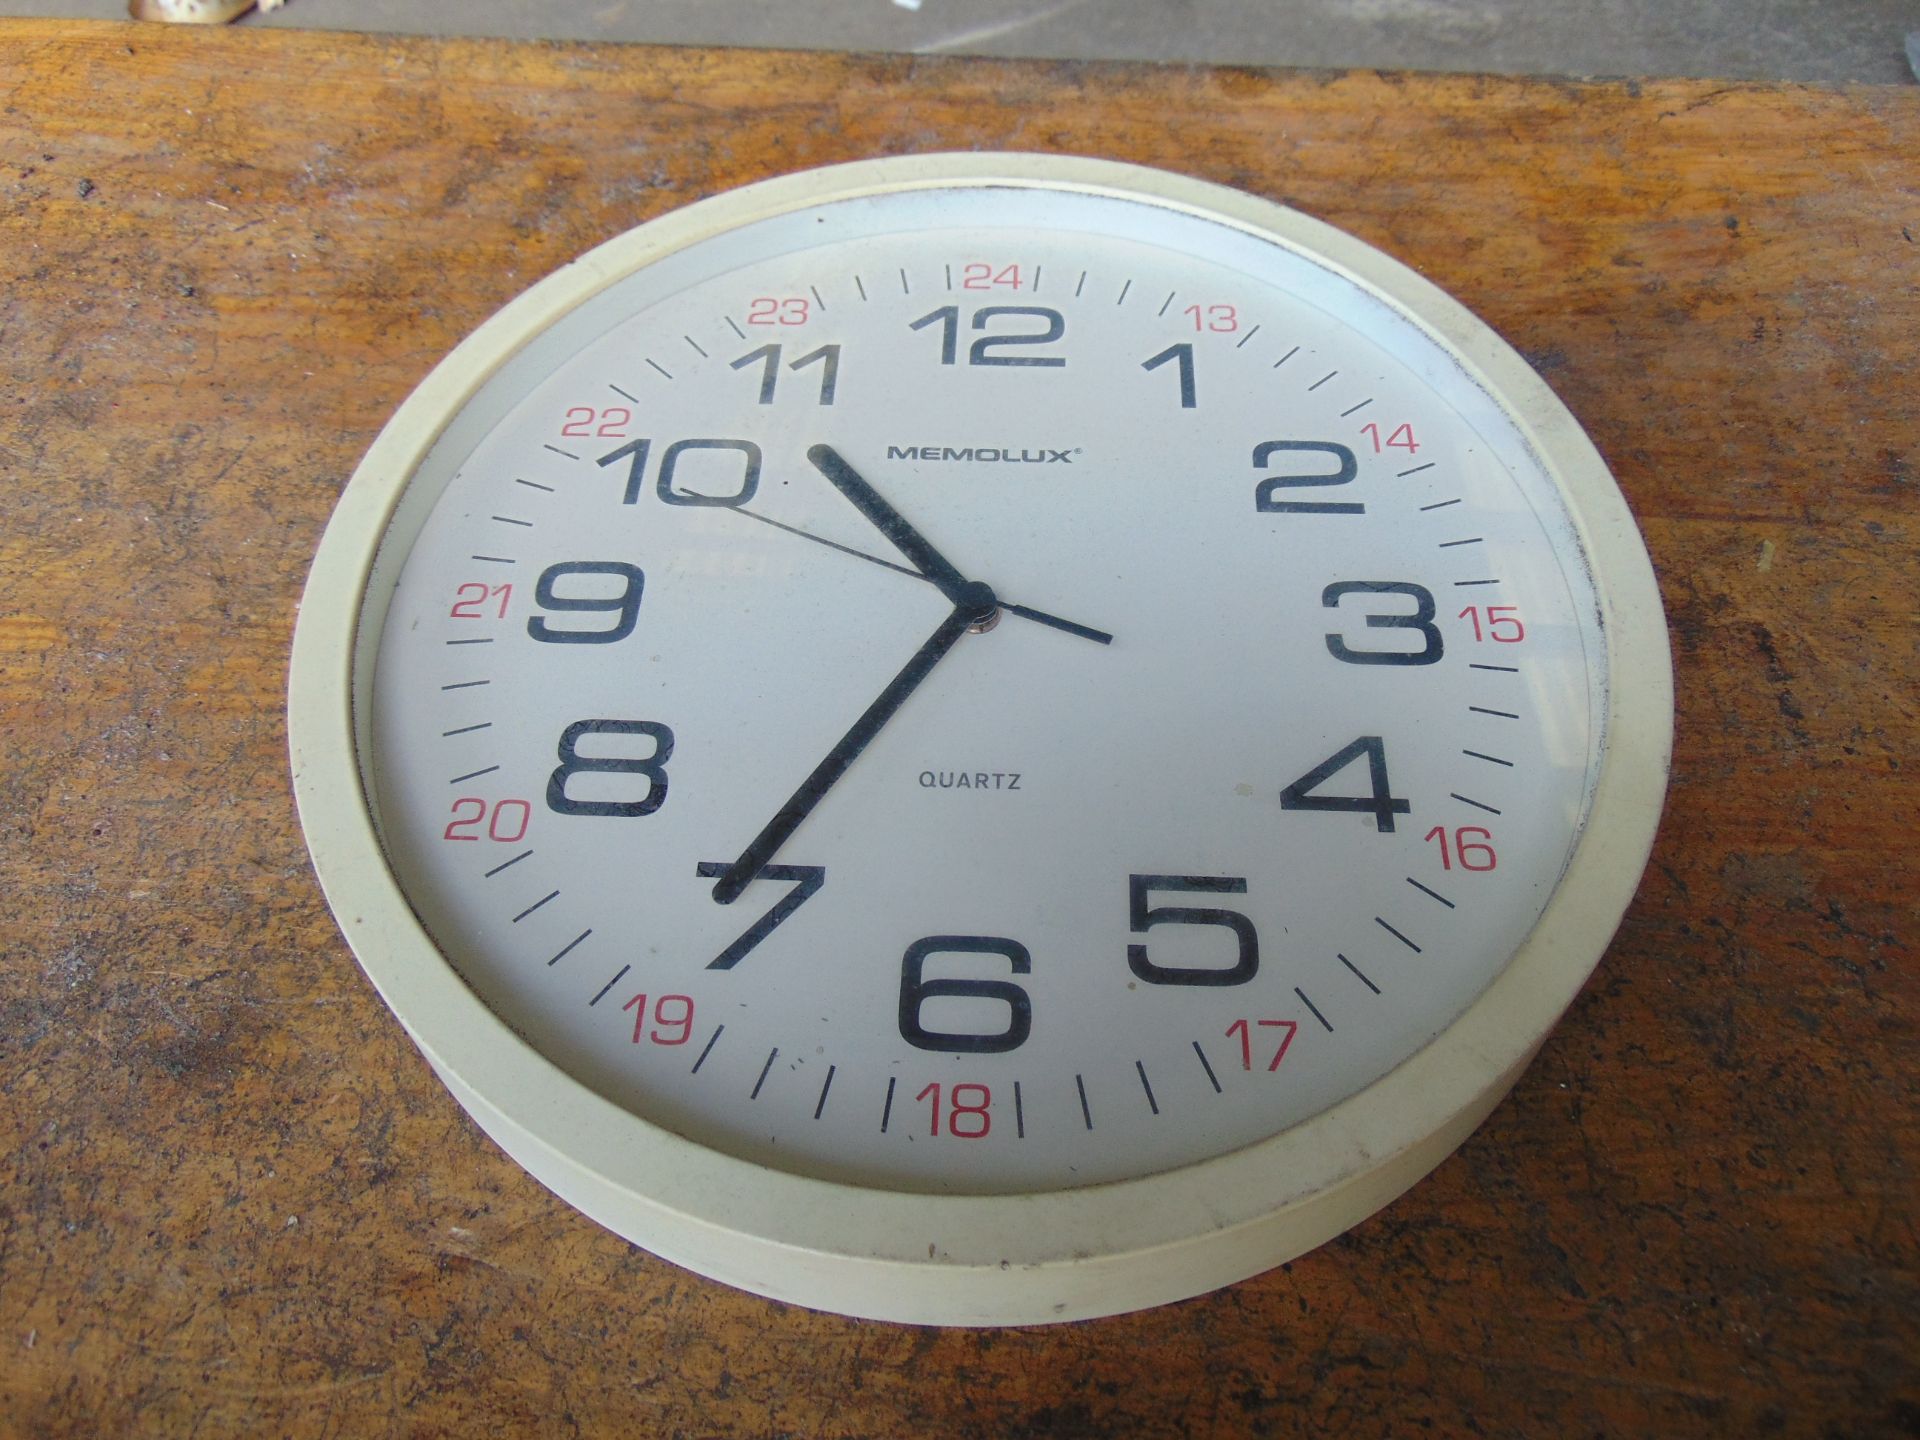 Memolux MoD 24hr Clock - Image 2 of 4